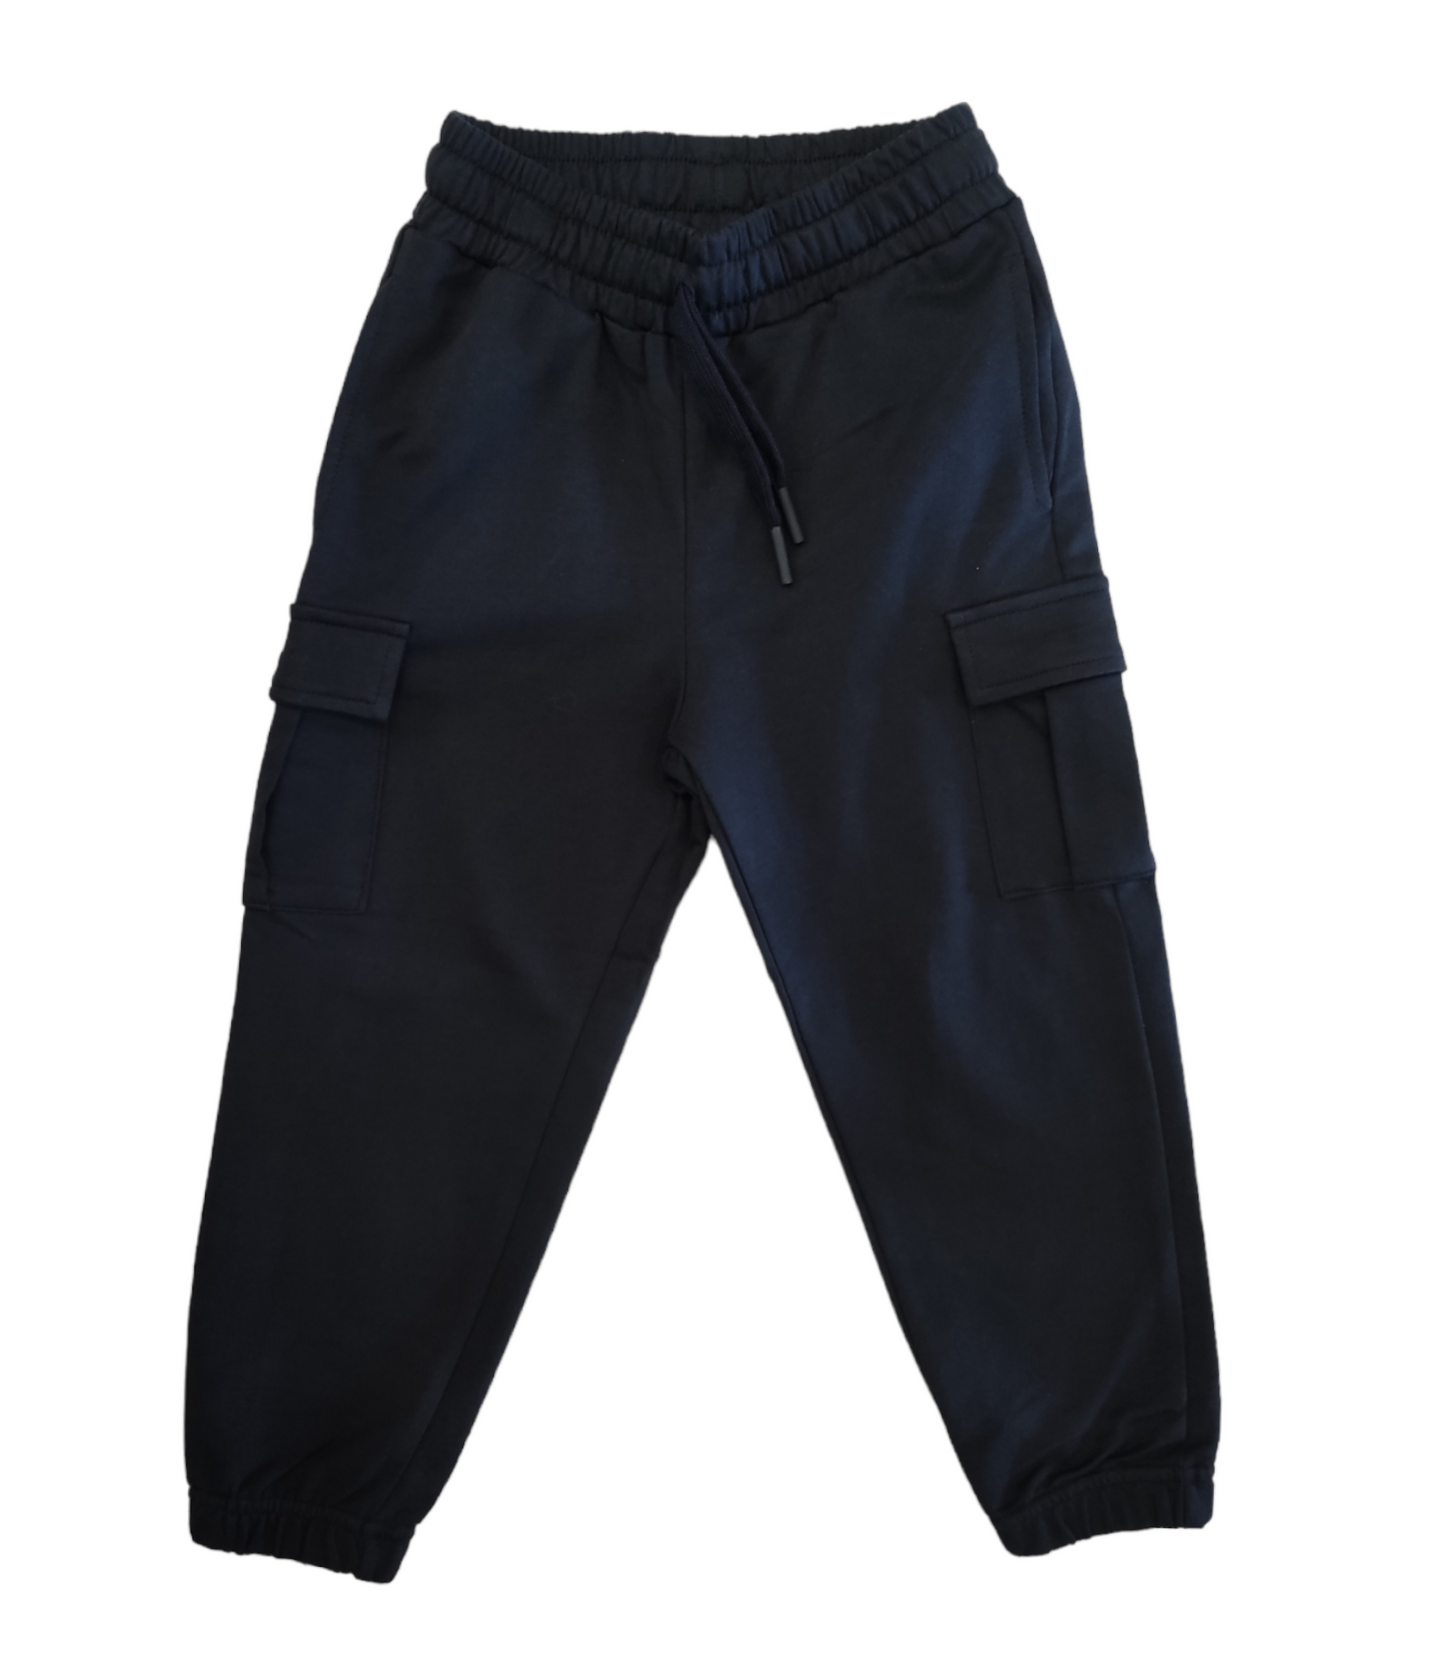 Pantalone Tuta Blu Scuro Primaverile Modello Cargo Bambino/Ragazzo 4-14 Anni